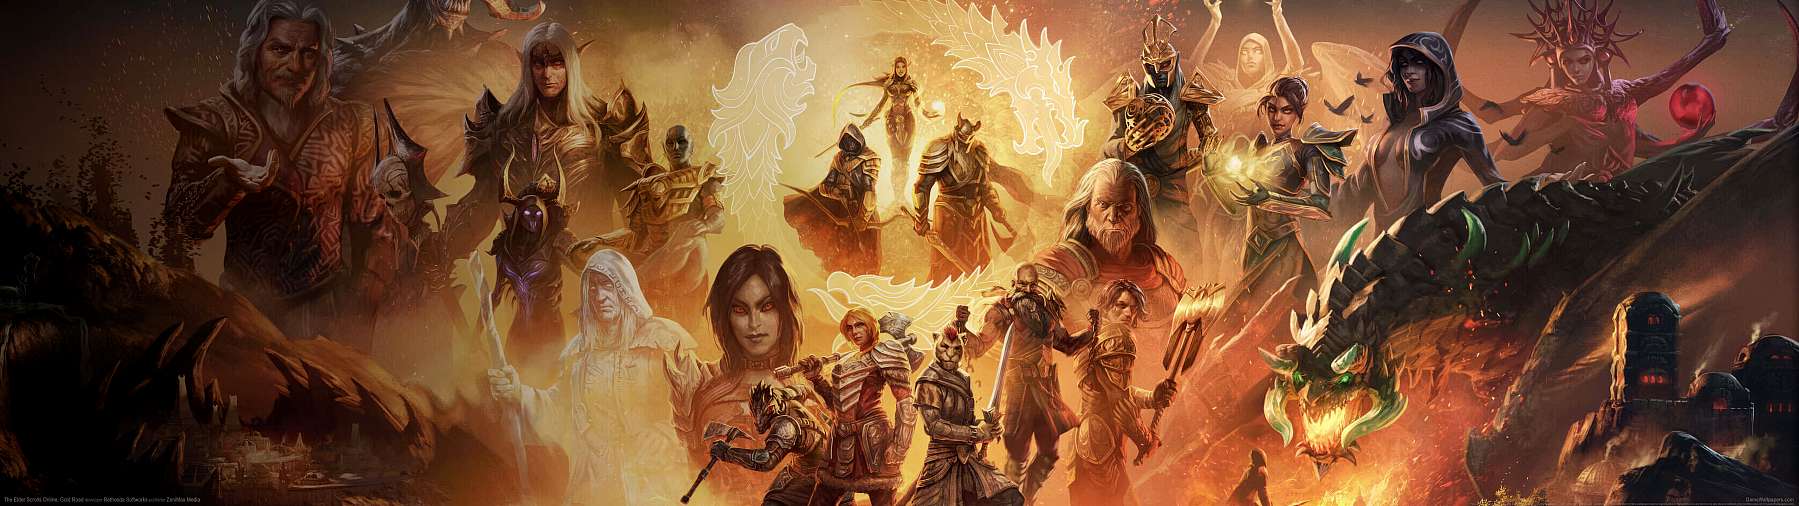 The Elder Scrolls Online: Gold Road superwide fond d'cran 02